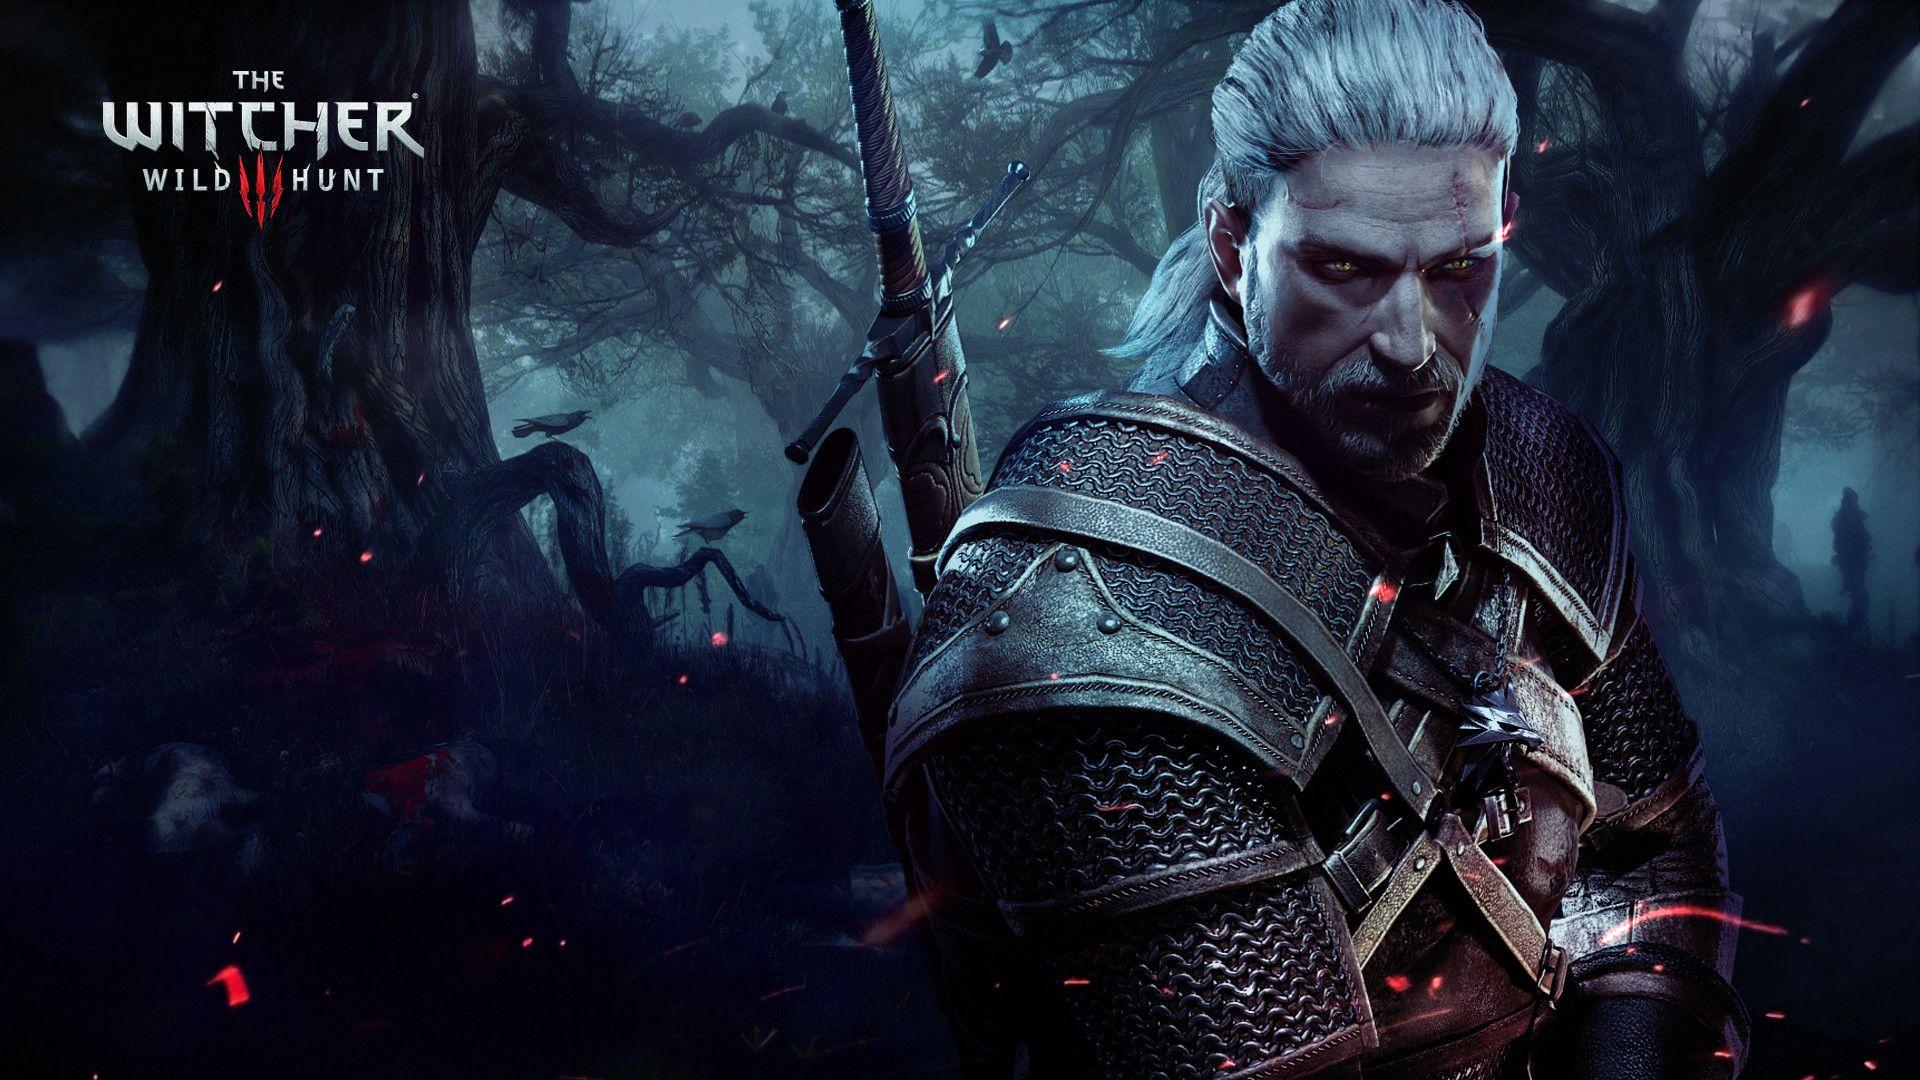 巫师3野狩猎Geralt 2015年移动壁纸高清原图下载,巫师3野狩猎Geralt 2015年移动壁纸,手机壁纸,手机锁屏壁纸-魔秀